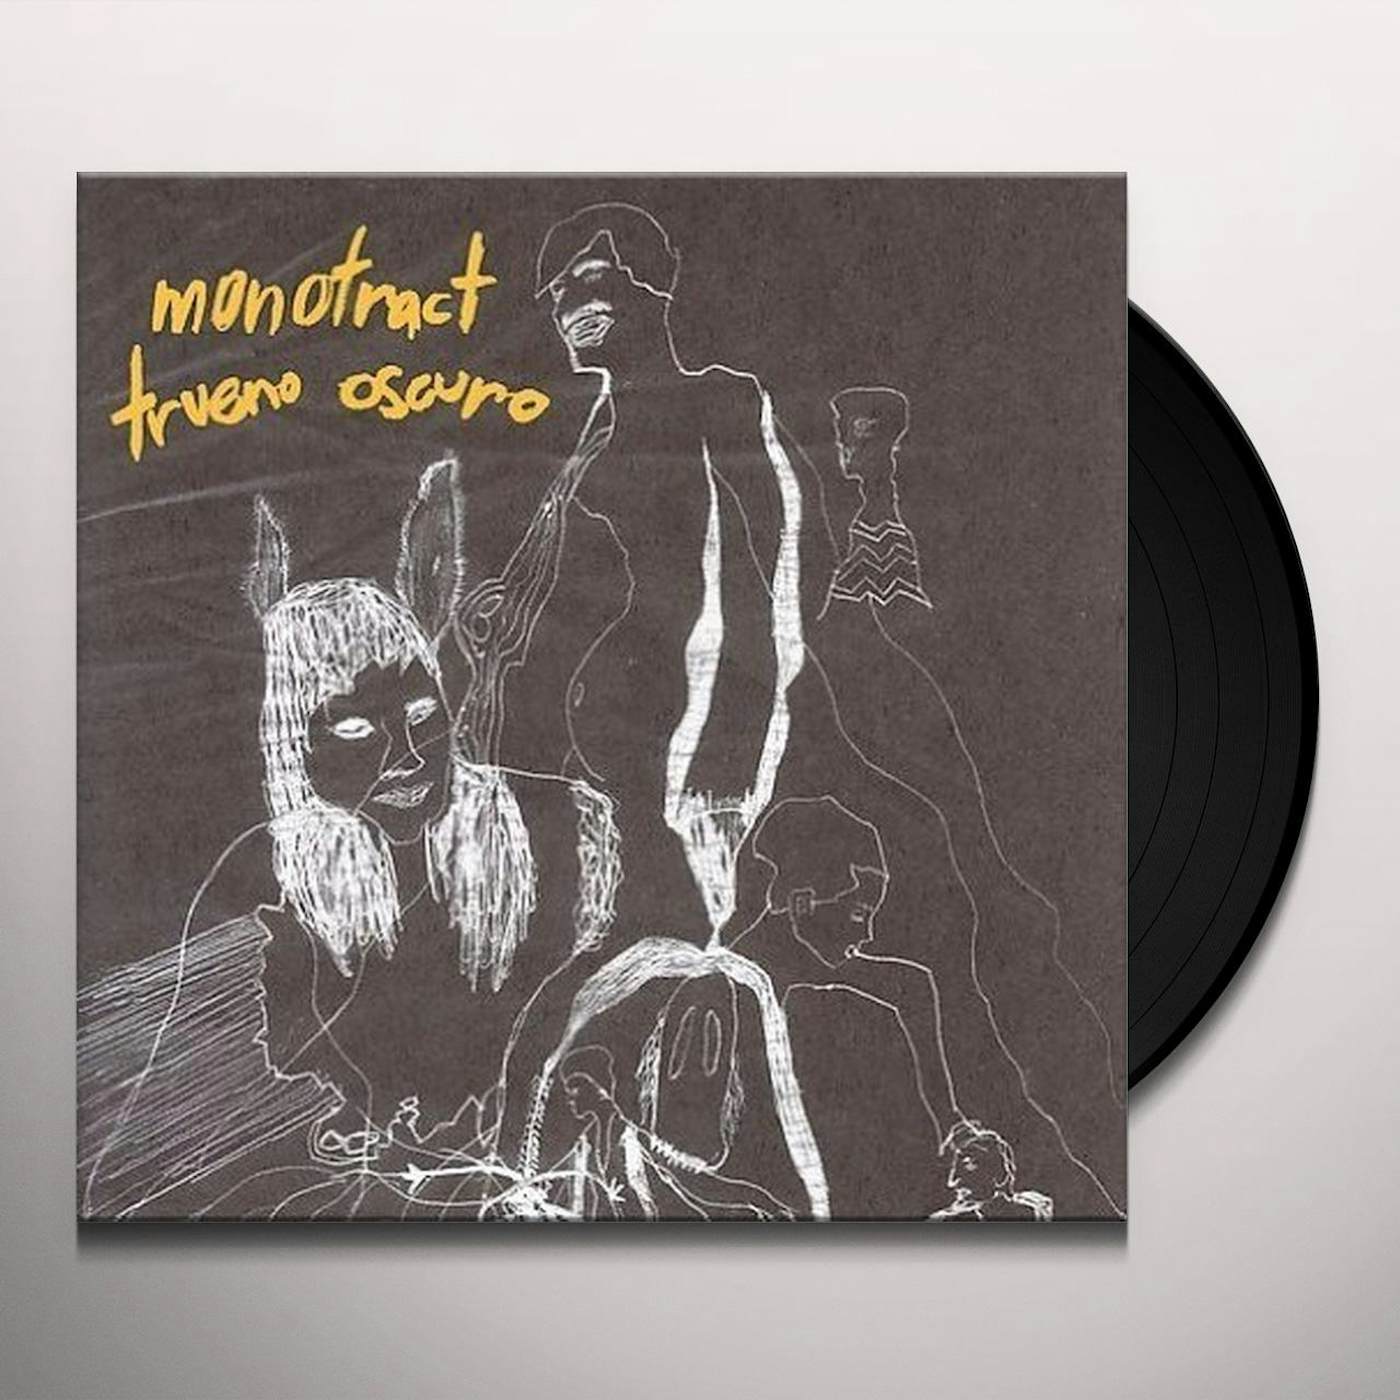 Monotract TRUENO OSCURO Vinyl Record - Deluxe Edition